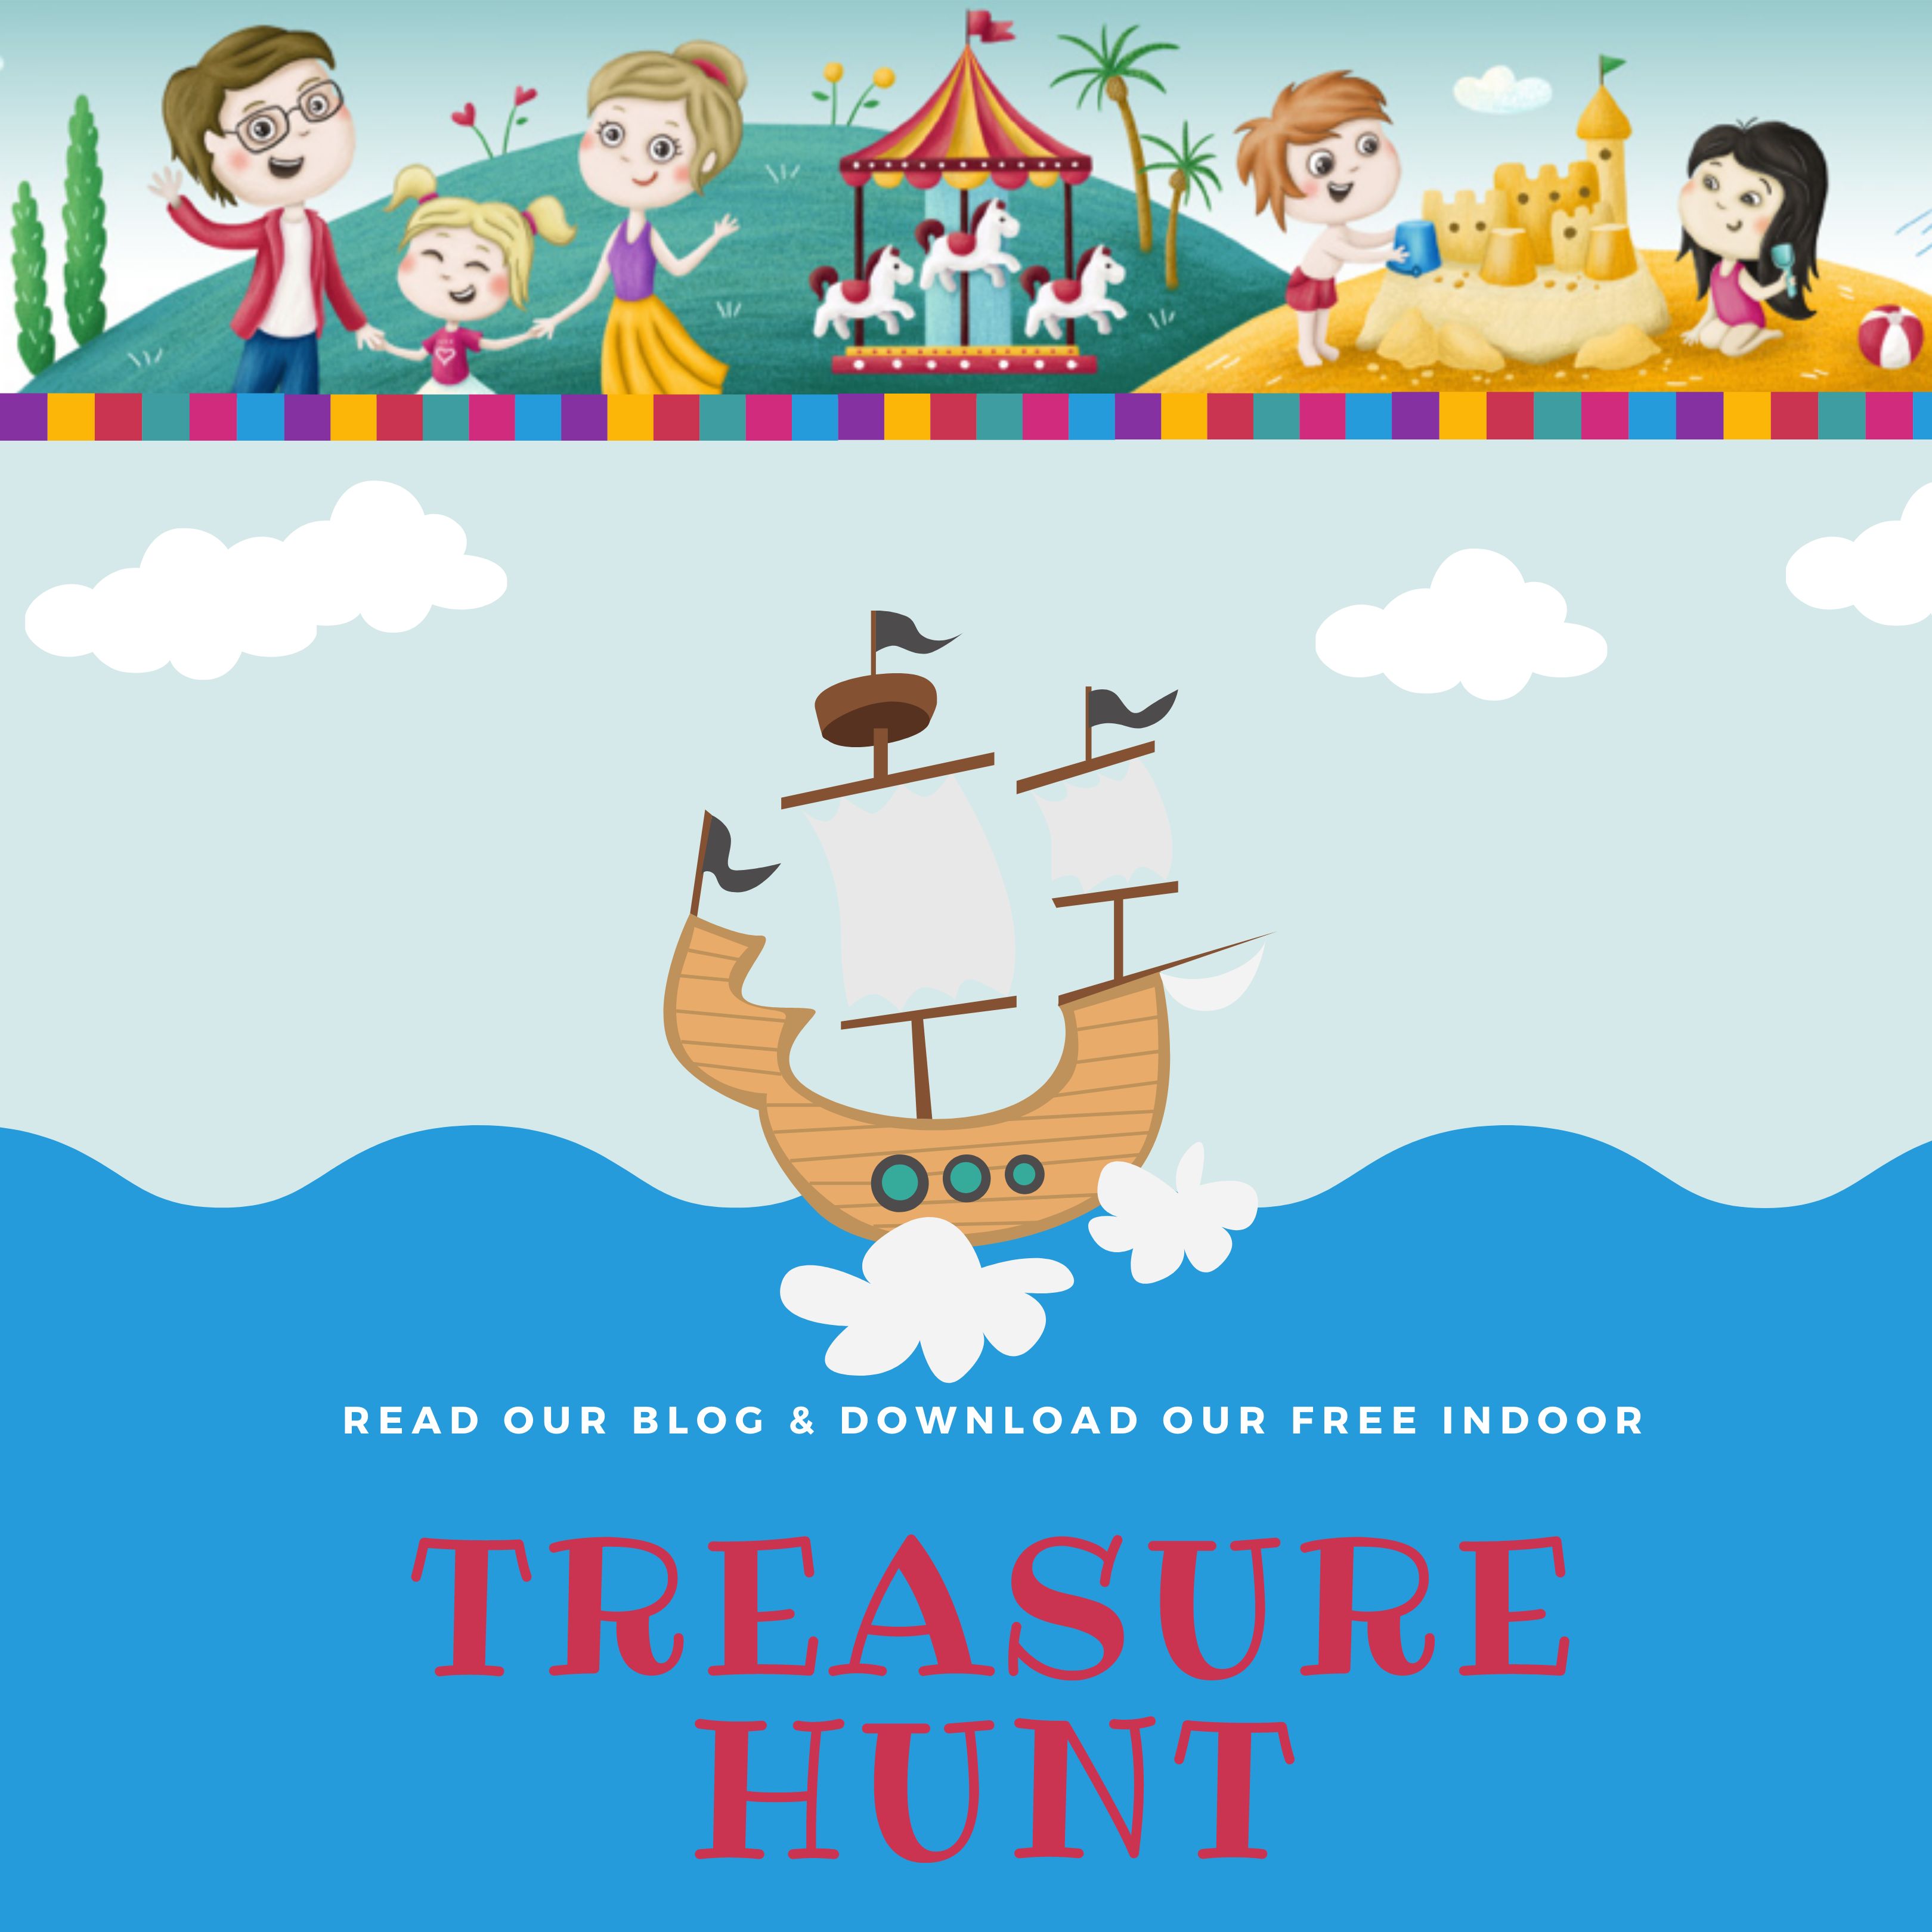 Treasure Hunt Free indoor activity for kids